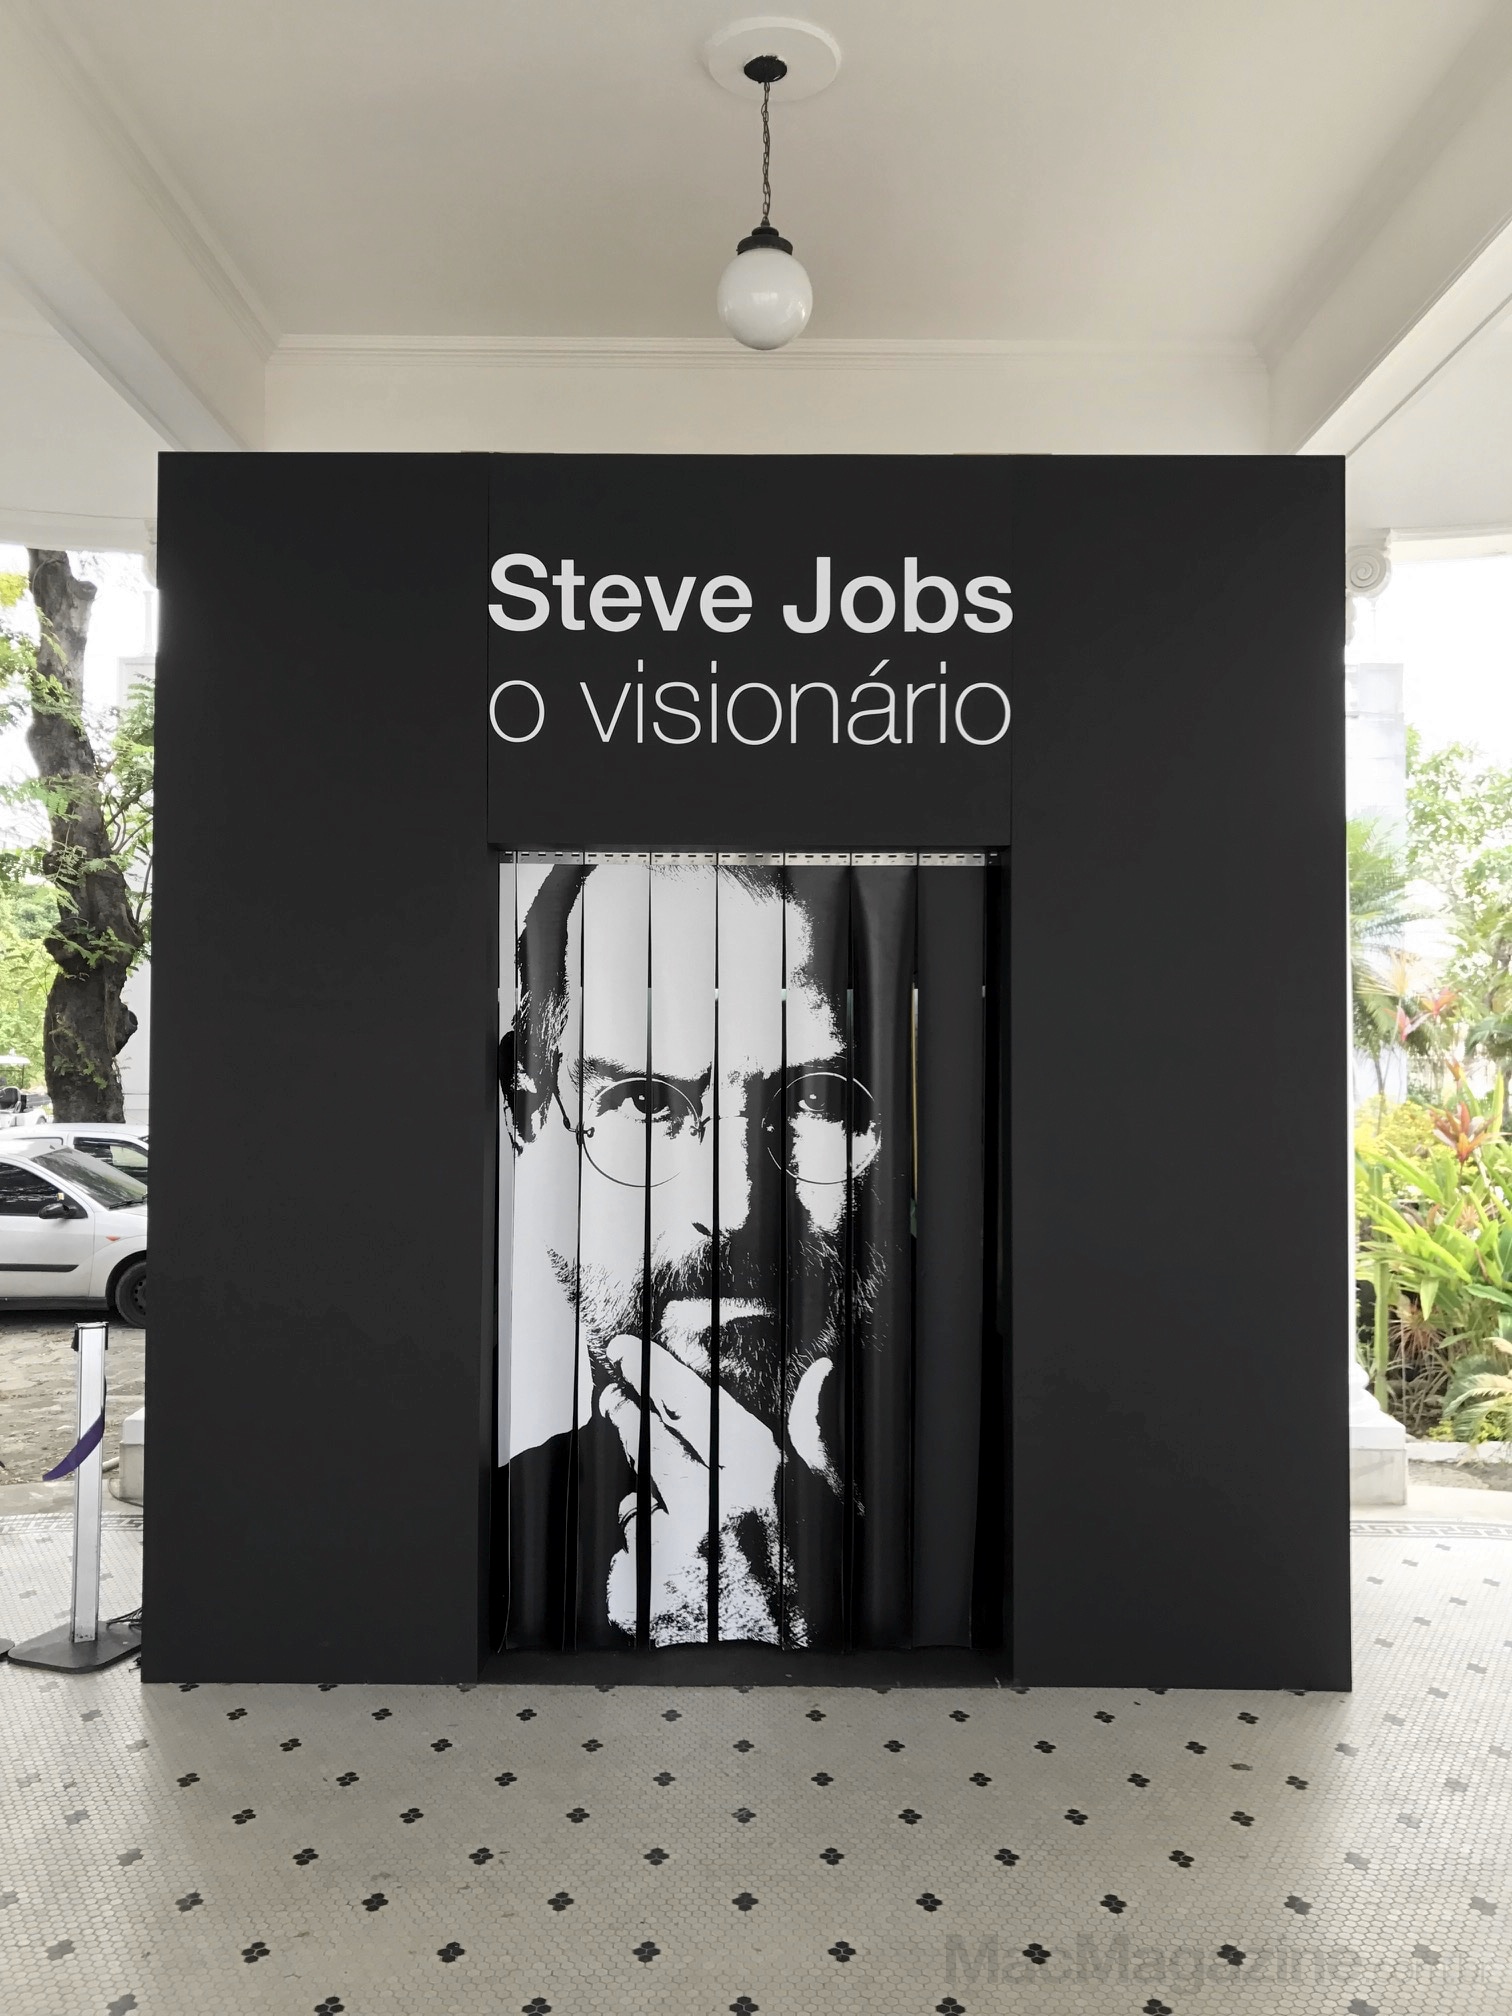 Exposição "Steve Jobs, o visionário"